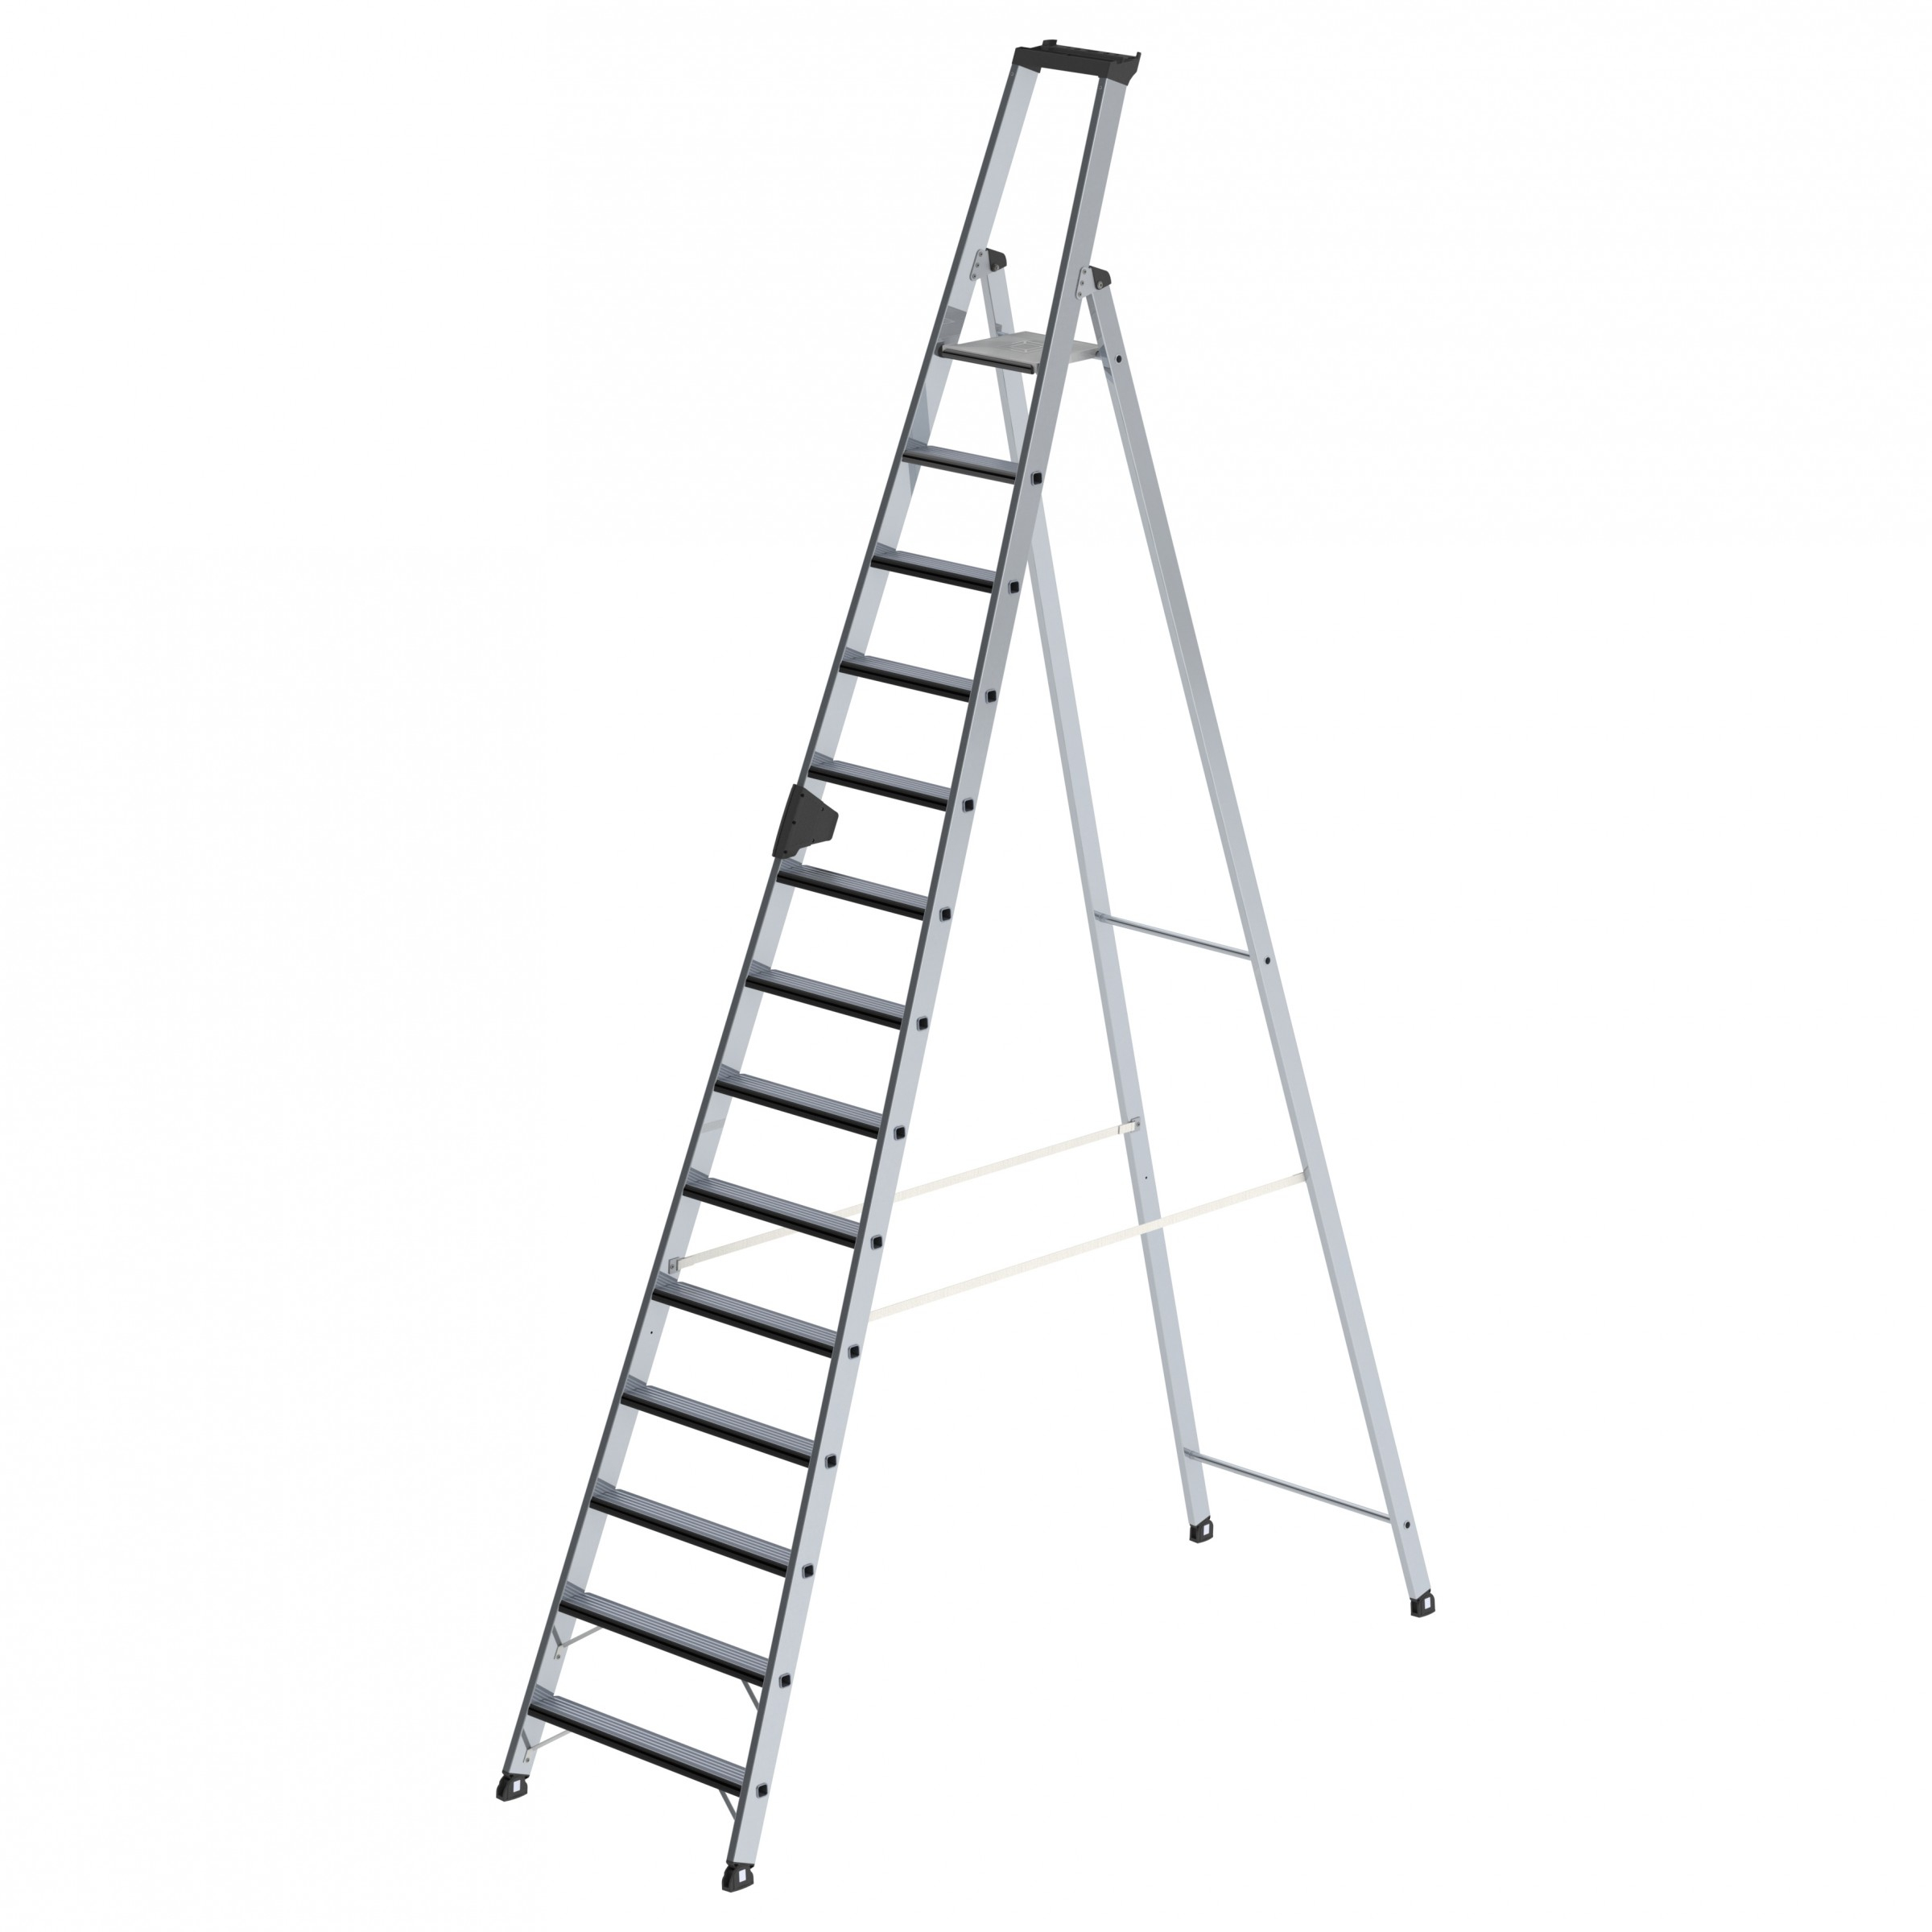 Stufen-Stehleiter einseitig begehbar mit relax step®, 3 Stufen